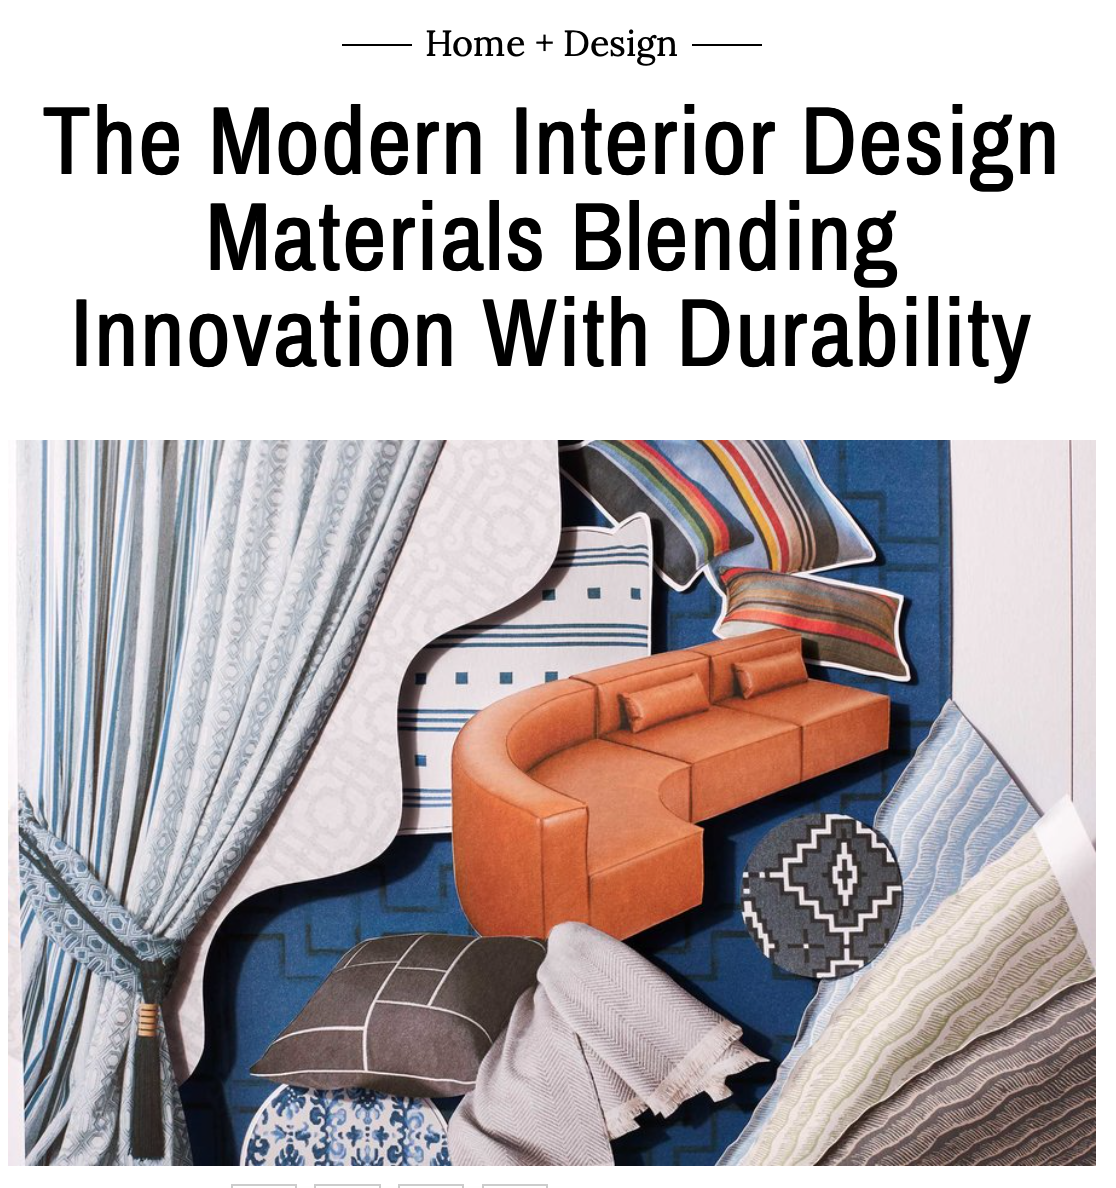 Innovative Interior Materials, Departures Home Design issue, Rima Suqi